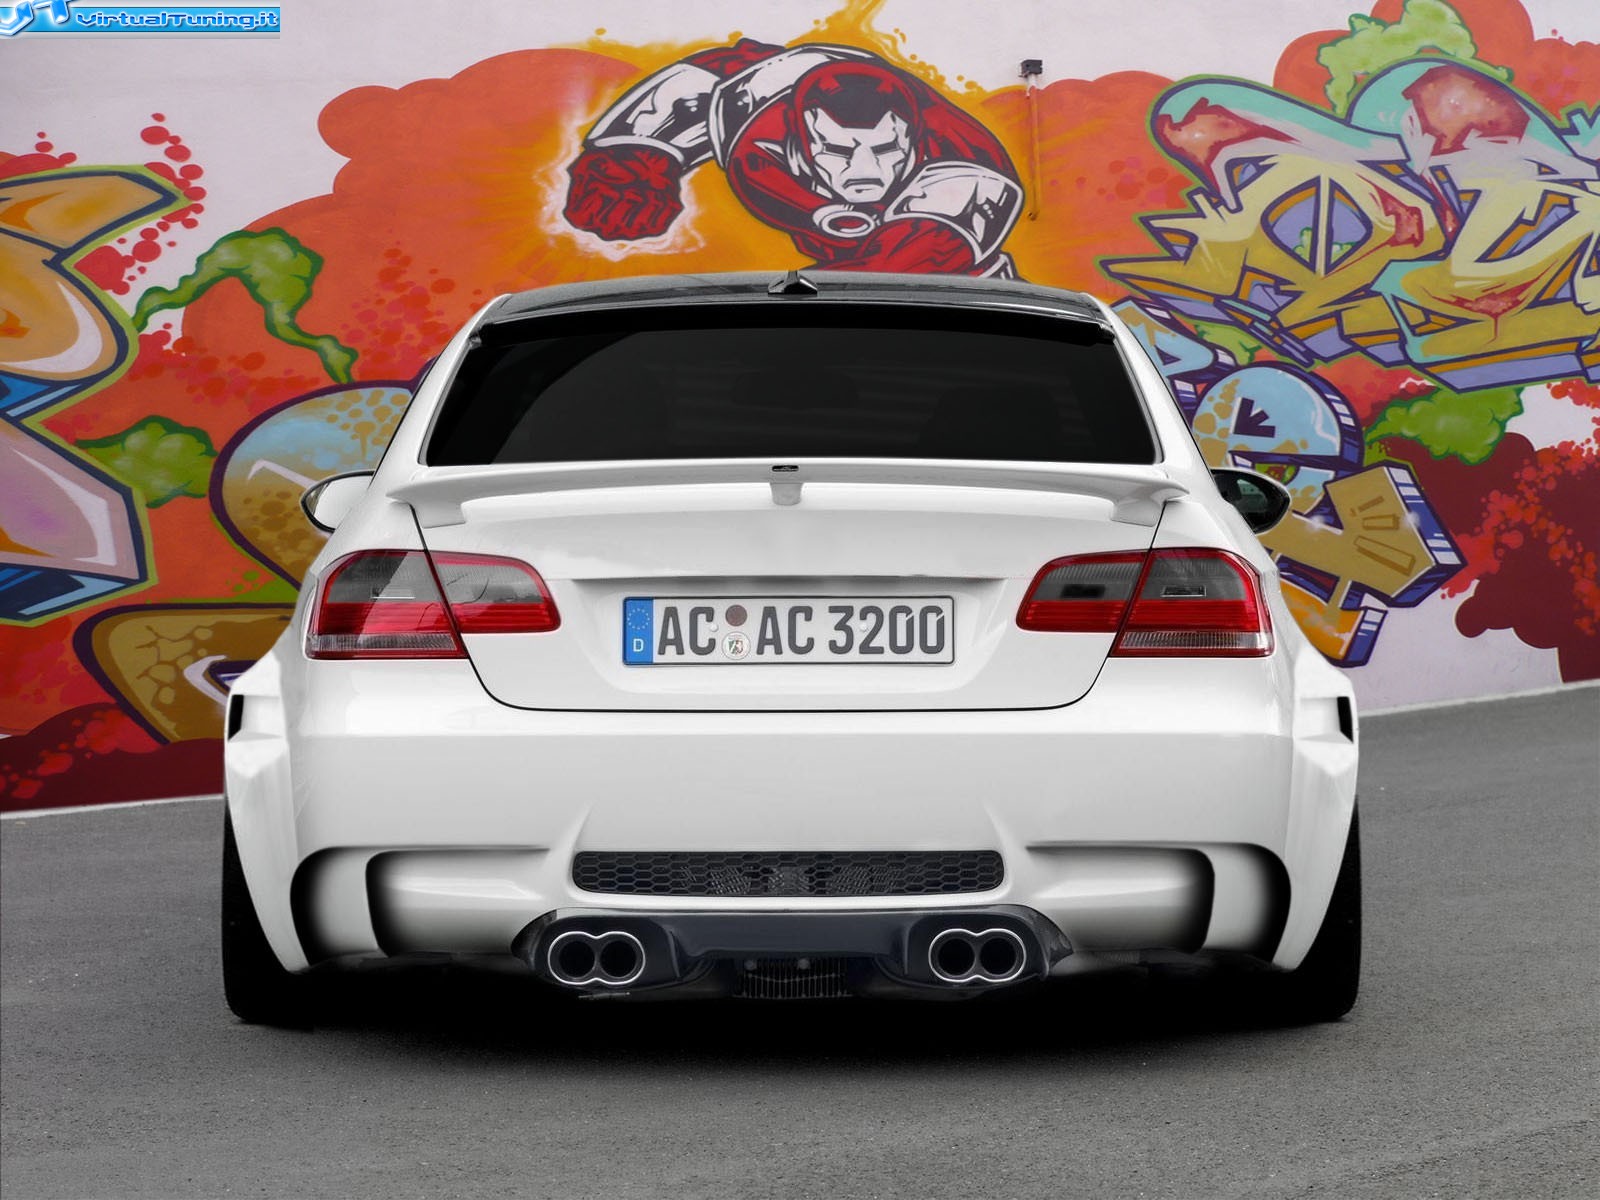 VirtualTuning BMW M3 by 